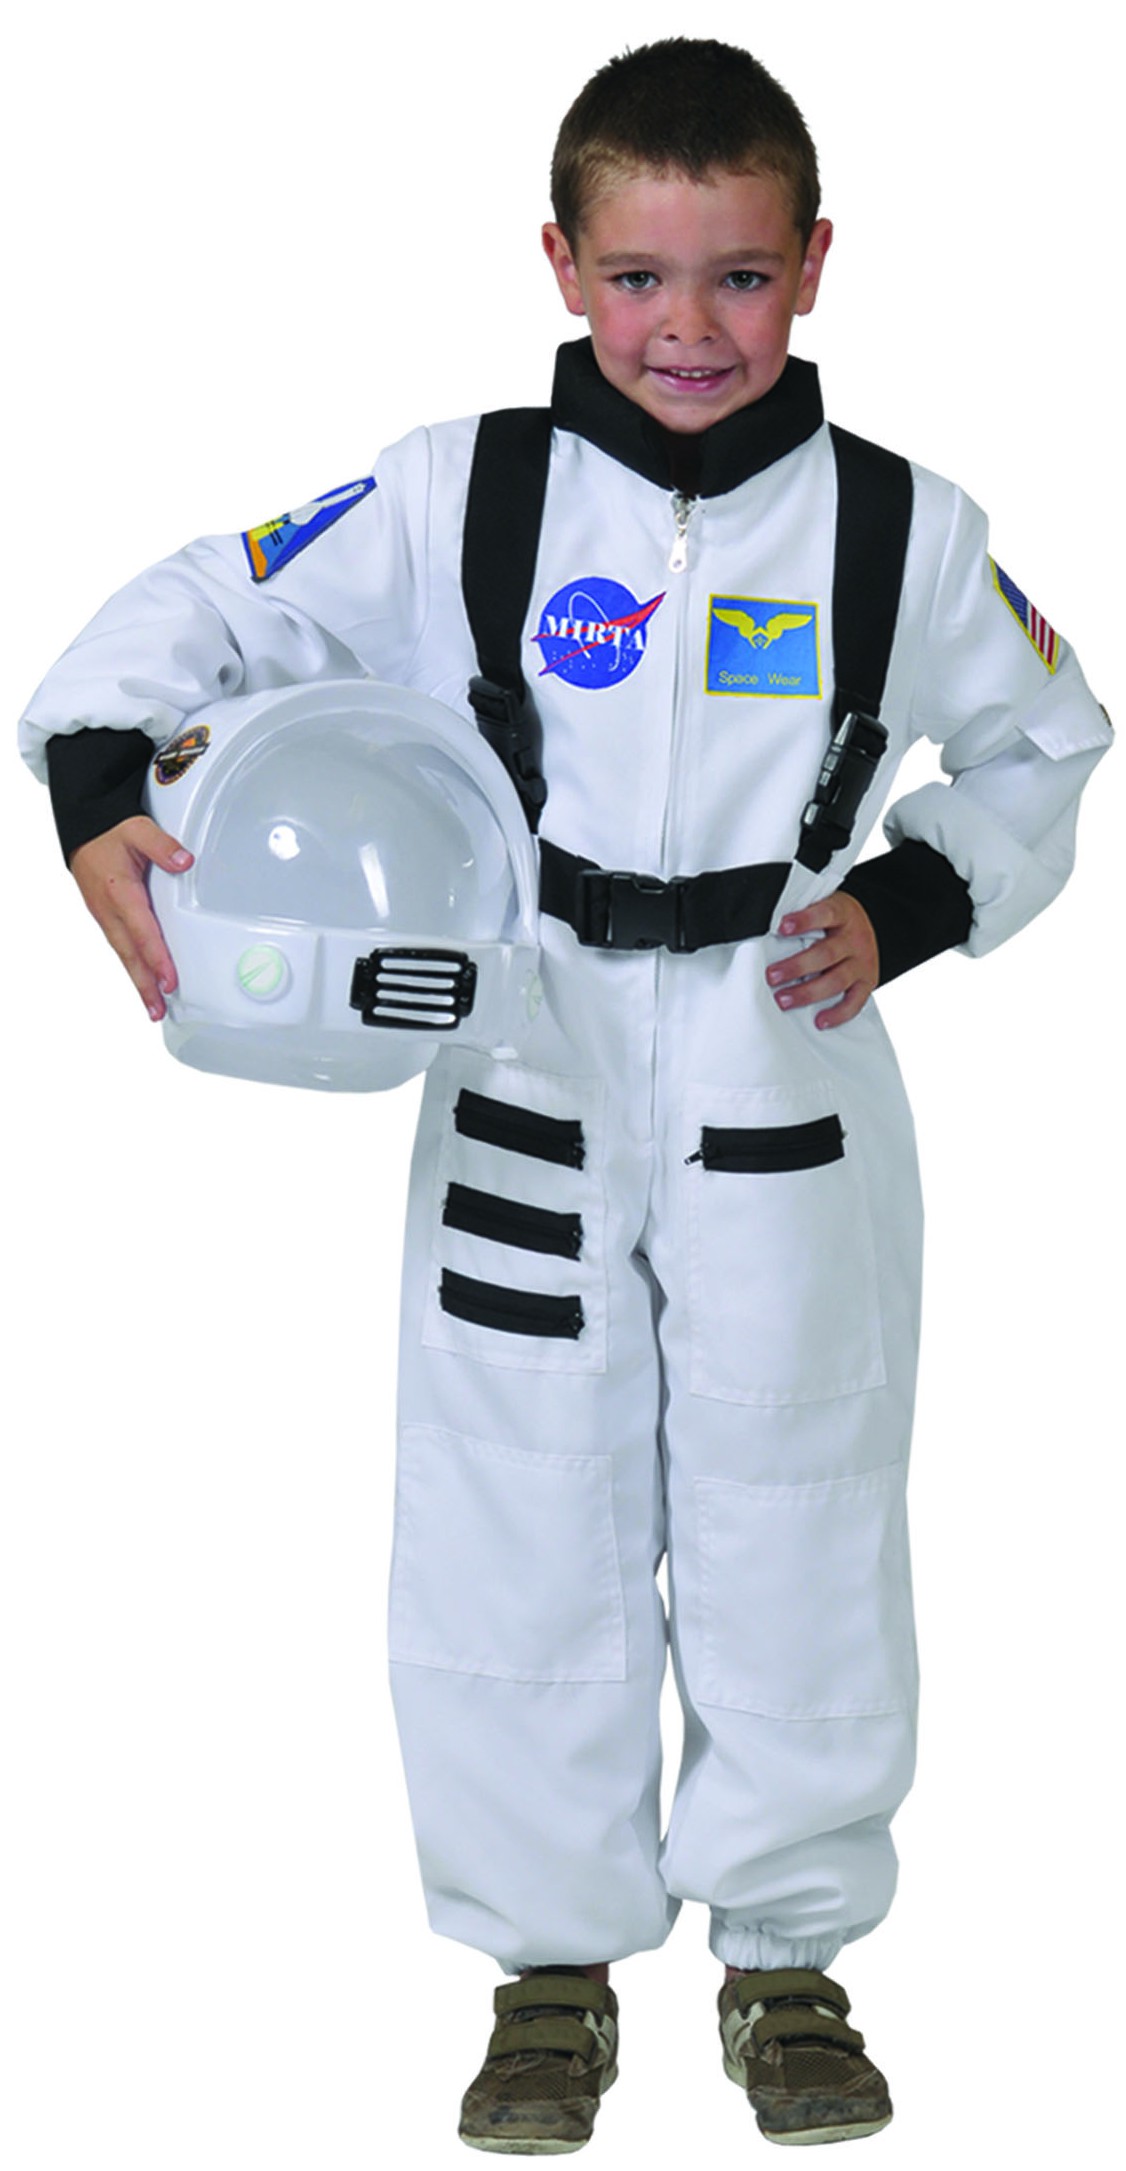 Blanc Tacobear Déguisement Astronaute Enfant Costume Astronaute Jeu de Rôle pour Enfant Anniversaire Halloween Cosplay Astronaute Deguisement avec Astronaute Casque 